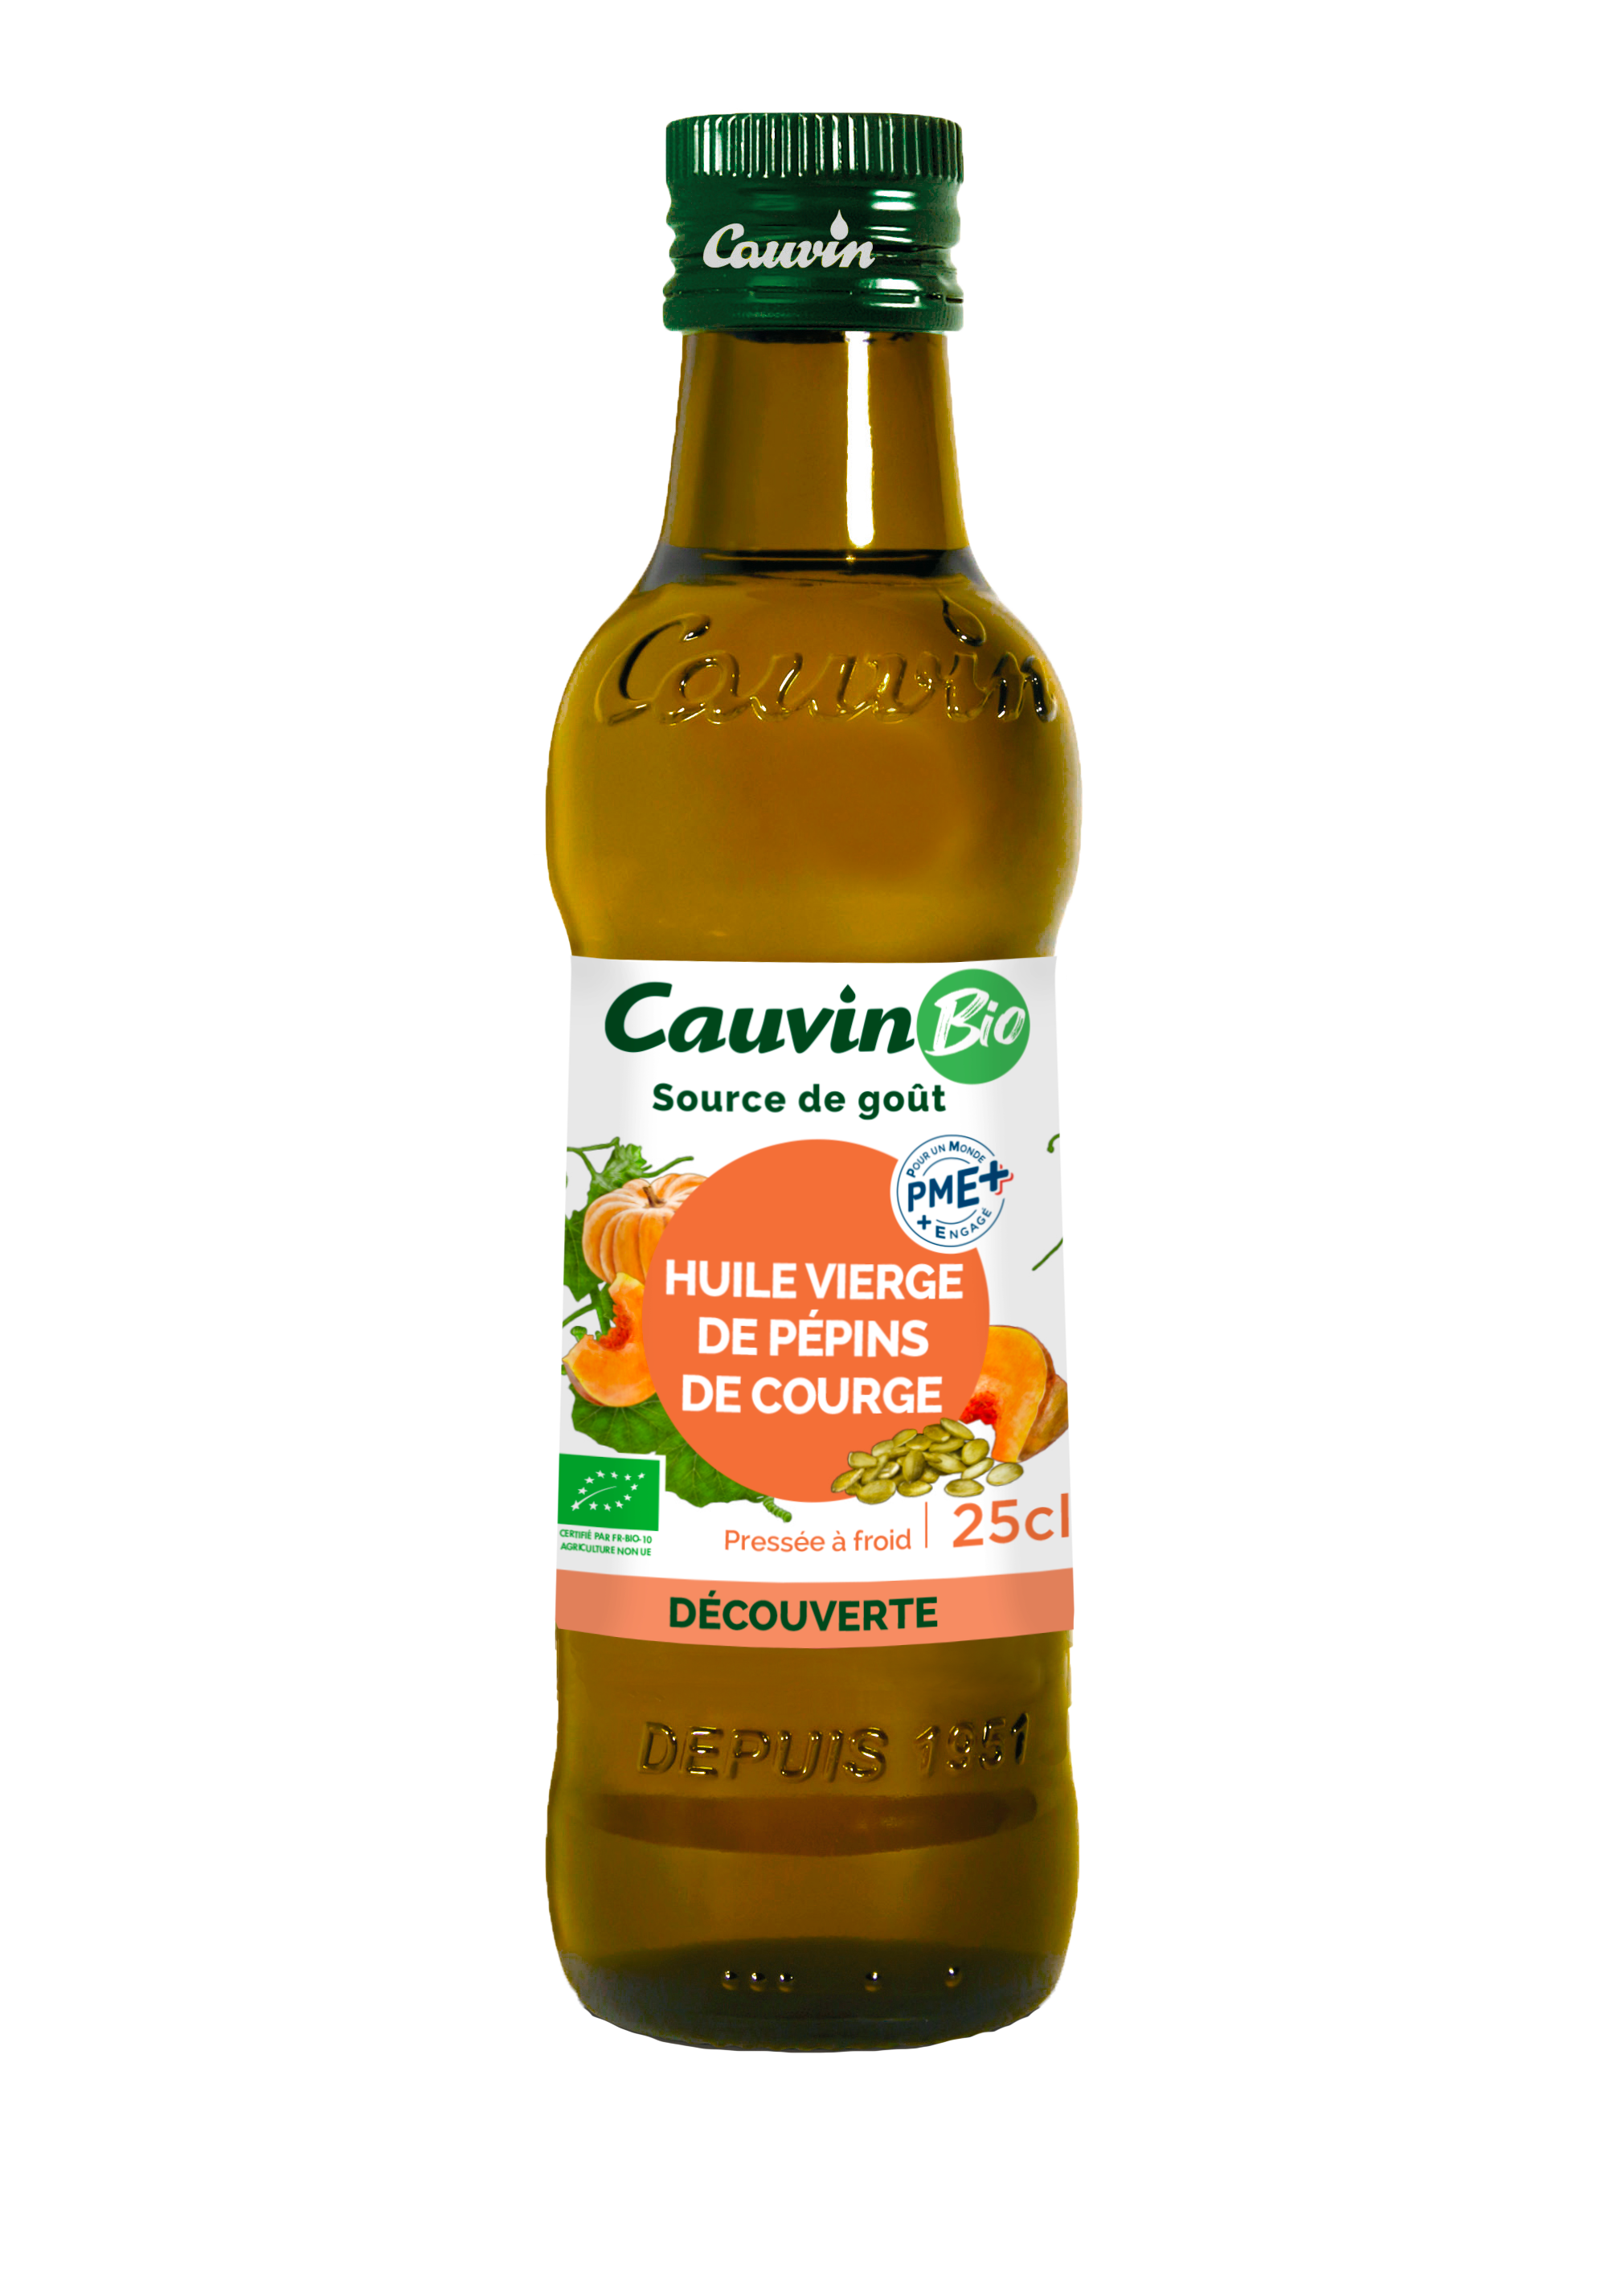 Cauvin Organic Virgin Pumpkin Seed Oil, Glass Bottle 250ml